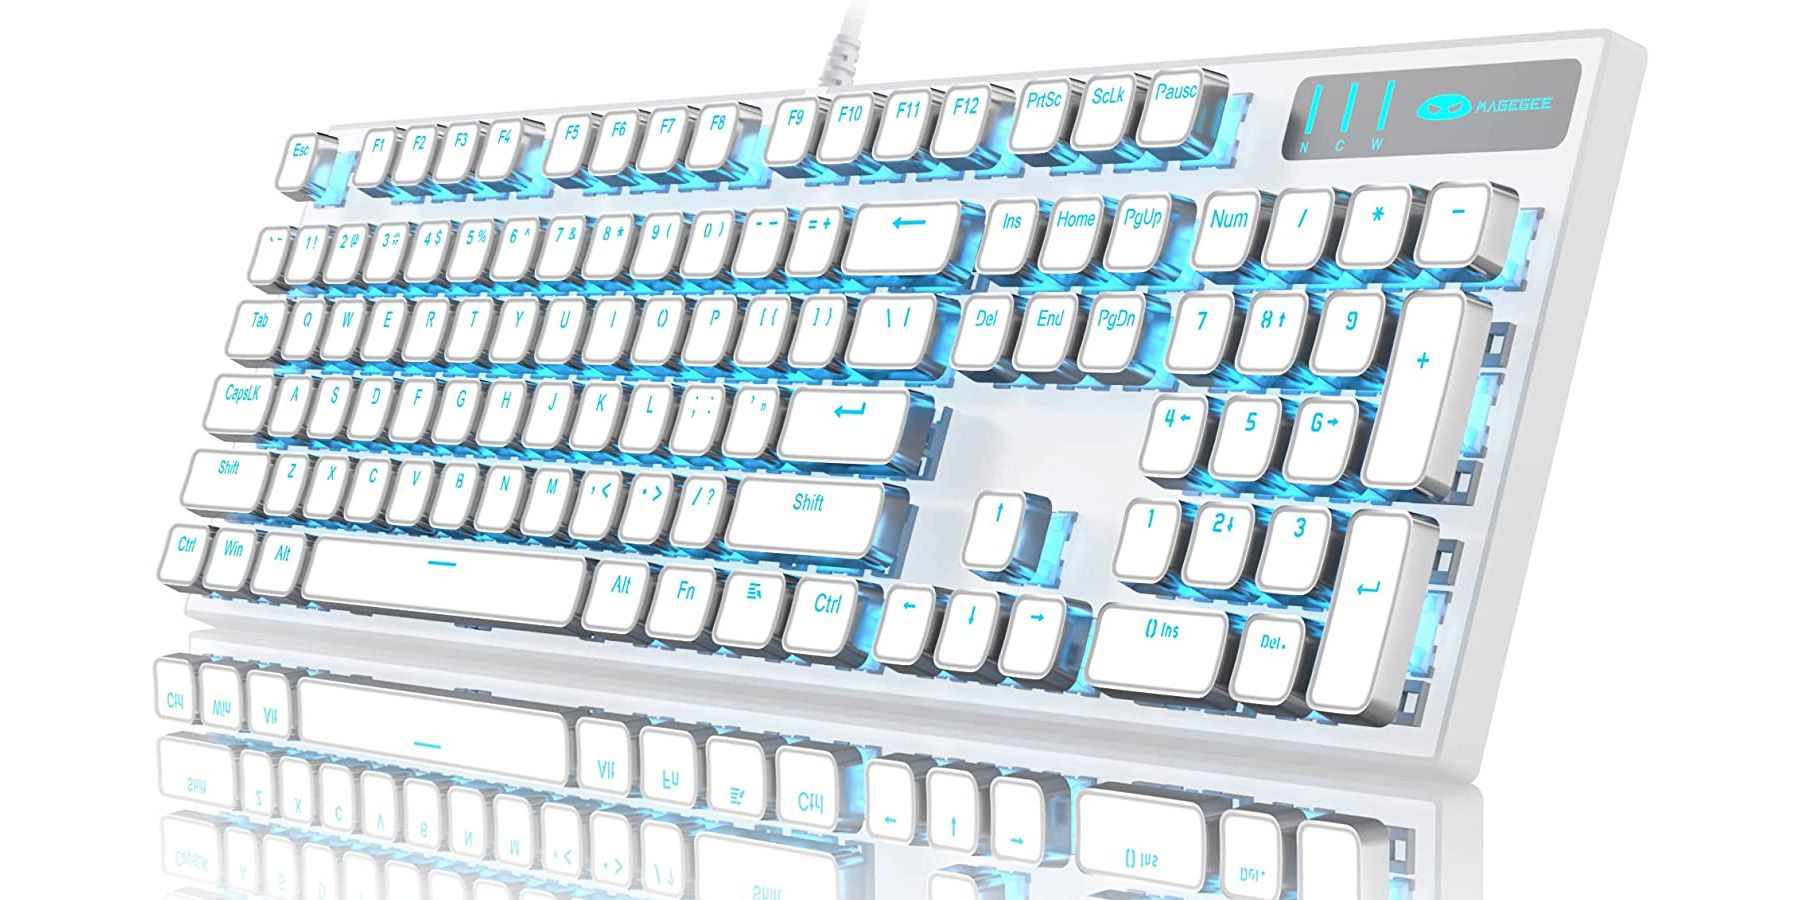 Typewriter Style Mechanical Gaming Keyboard